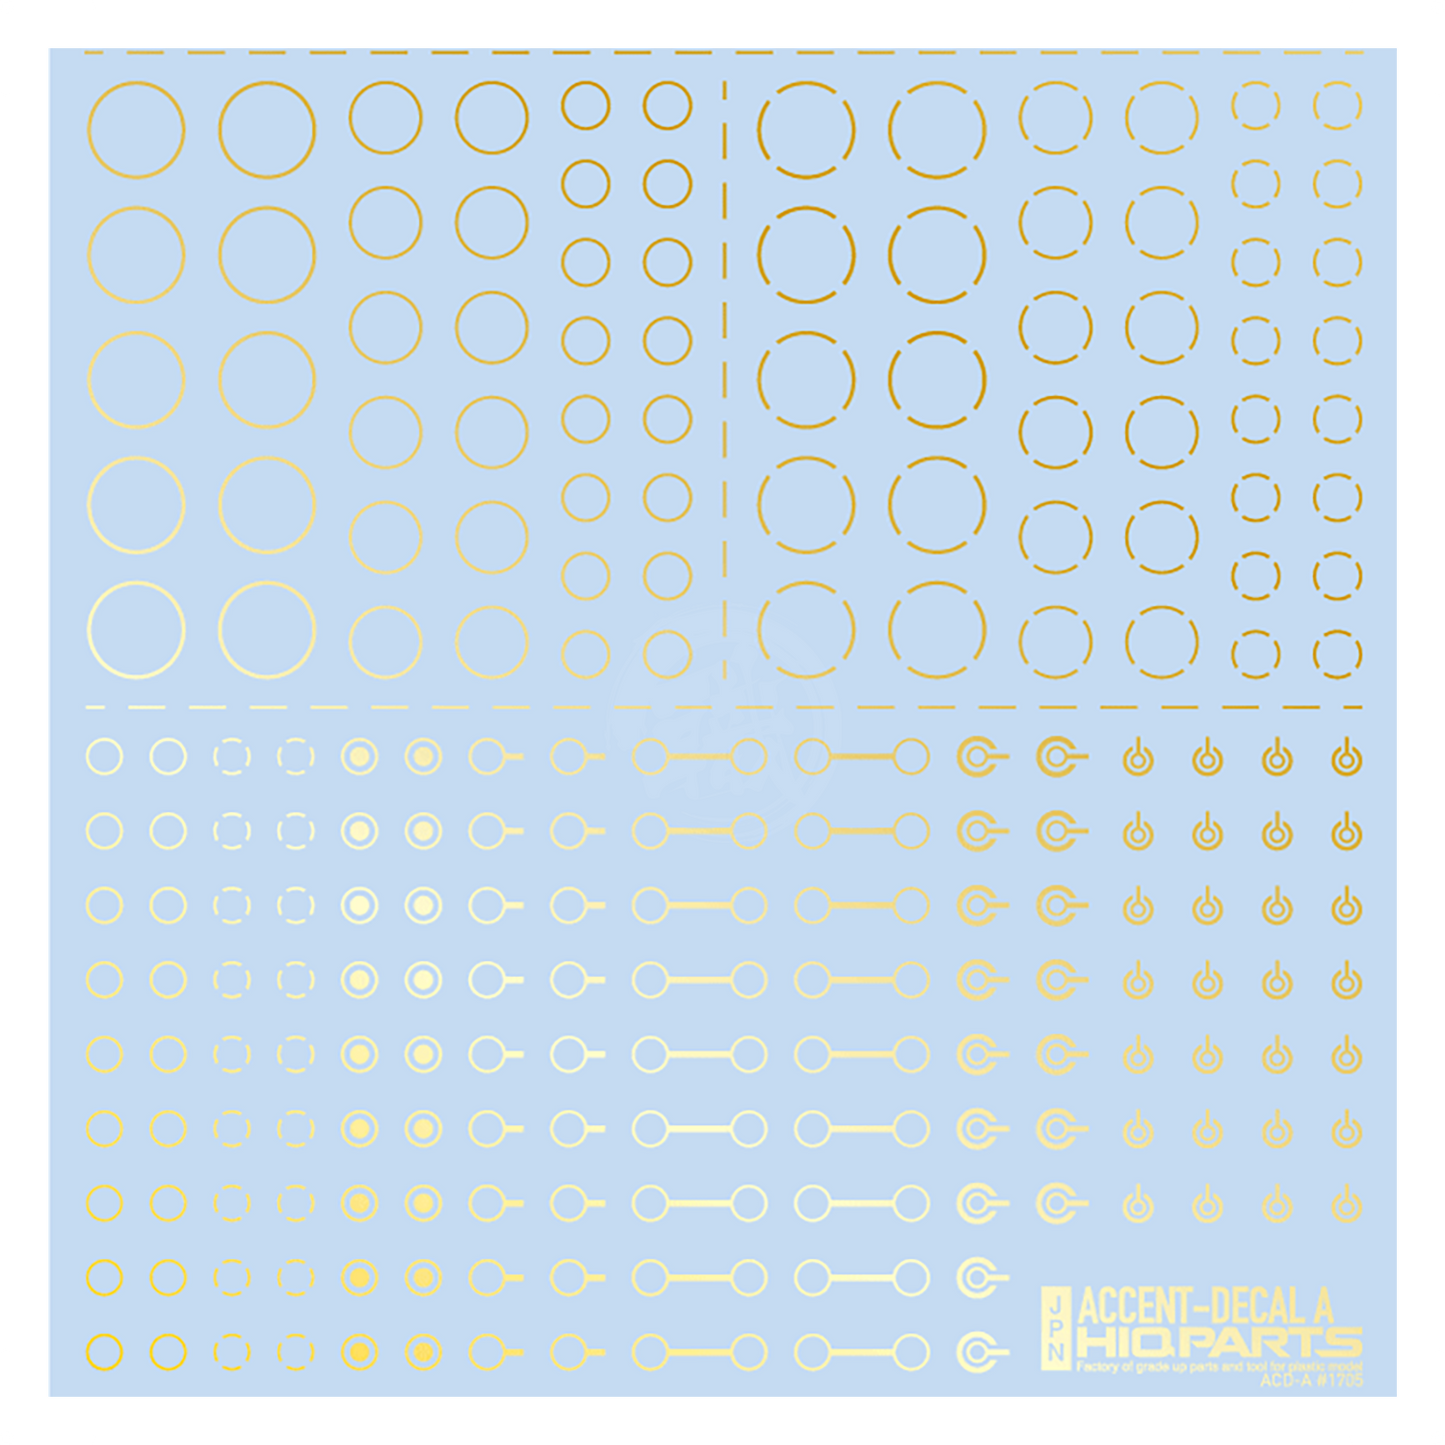 HIQParts - Accent Decal A [Foil Gold] - ShokuninGunpla